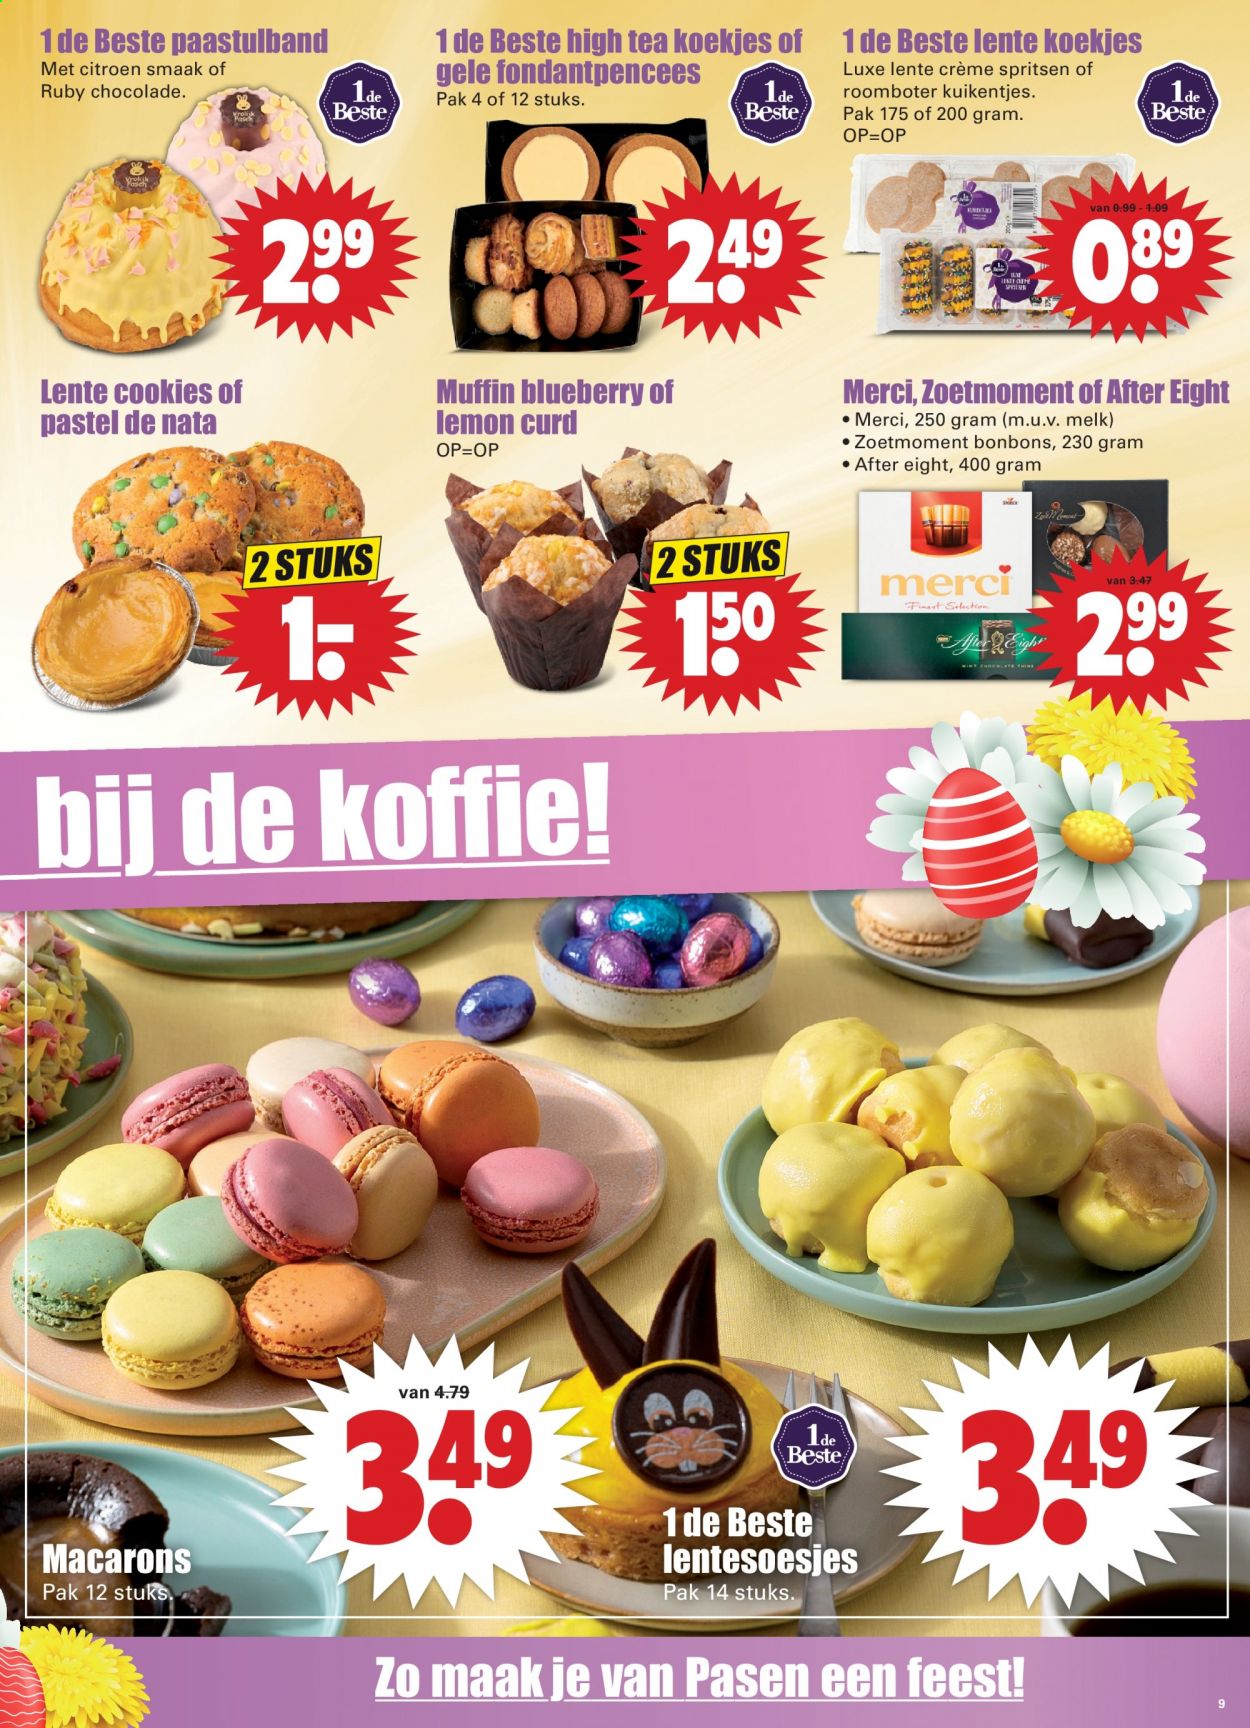 thumbnail - Dirk-aanbieding - 28-3-2021 - 3-4-2021 -  producten in de aanbieding - macarons, citroen, crème, melk, roomboter, After Eight, chocolade, koekjes, cookies, thee, koffie. Pagina 9.